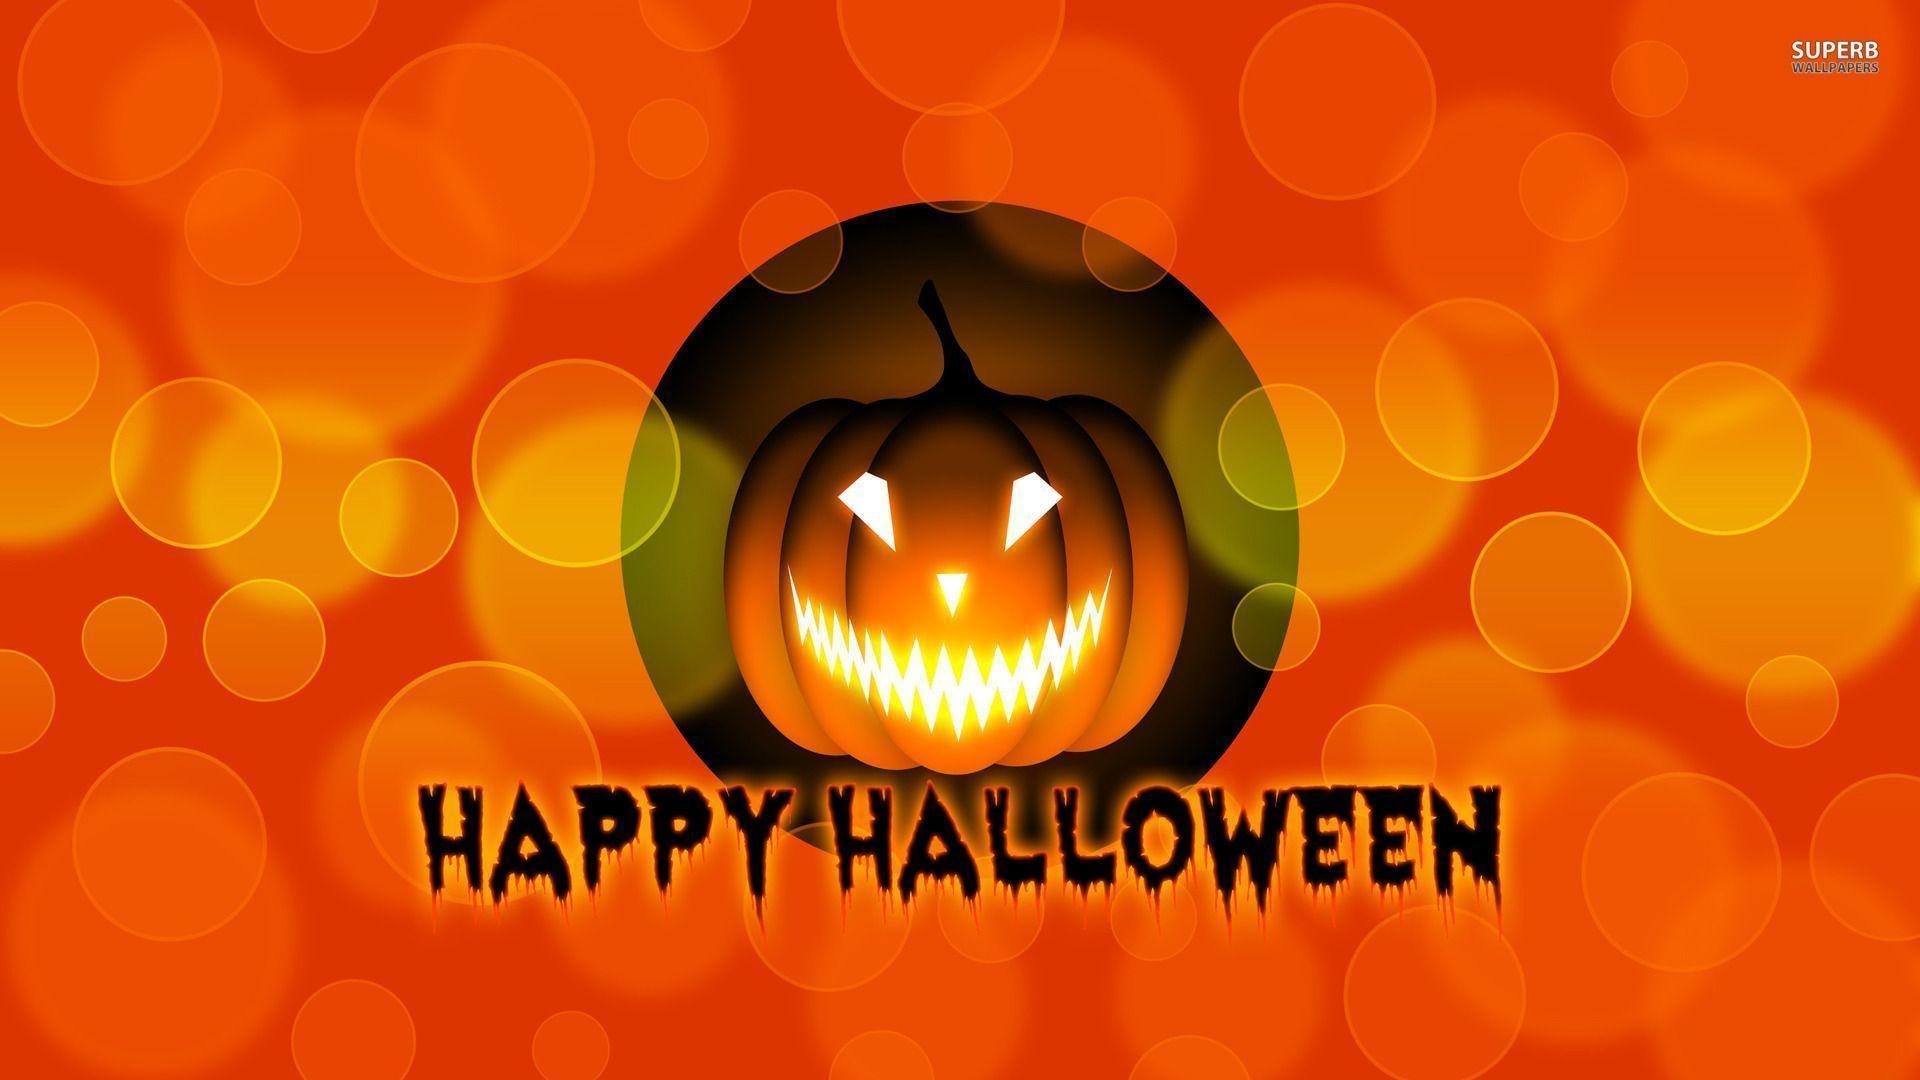 HD Happy Halloween Wallpaper Free for Desktop & iPhone